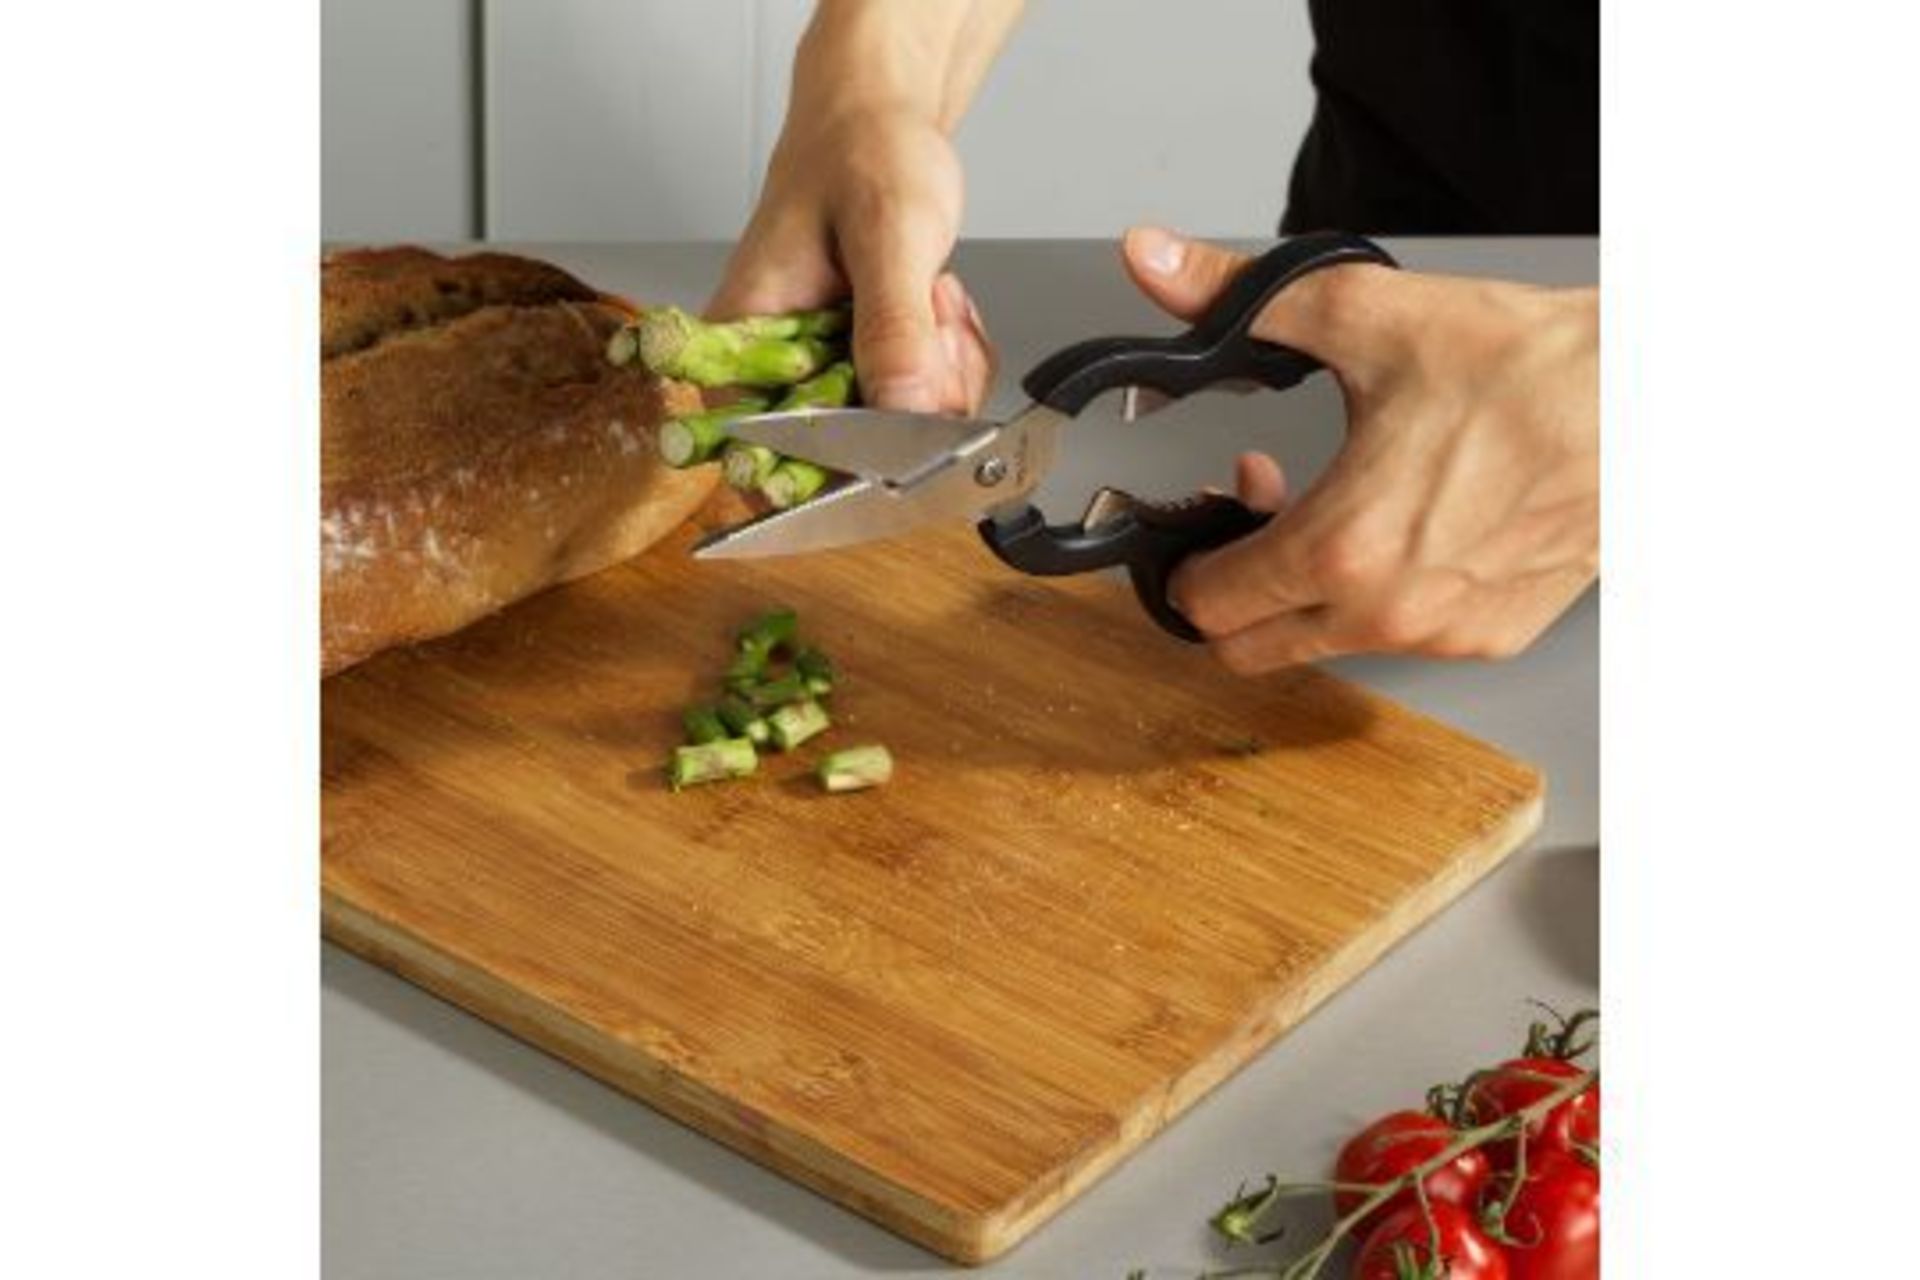 New Royal VKB Multipurpose Kitchen Scissors - RRP £8.49.